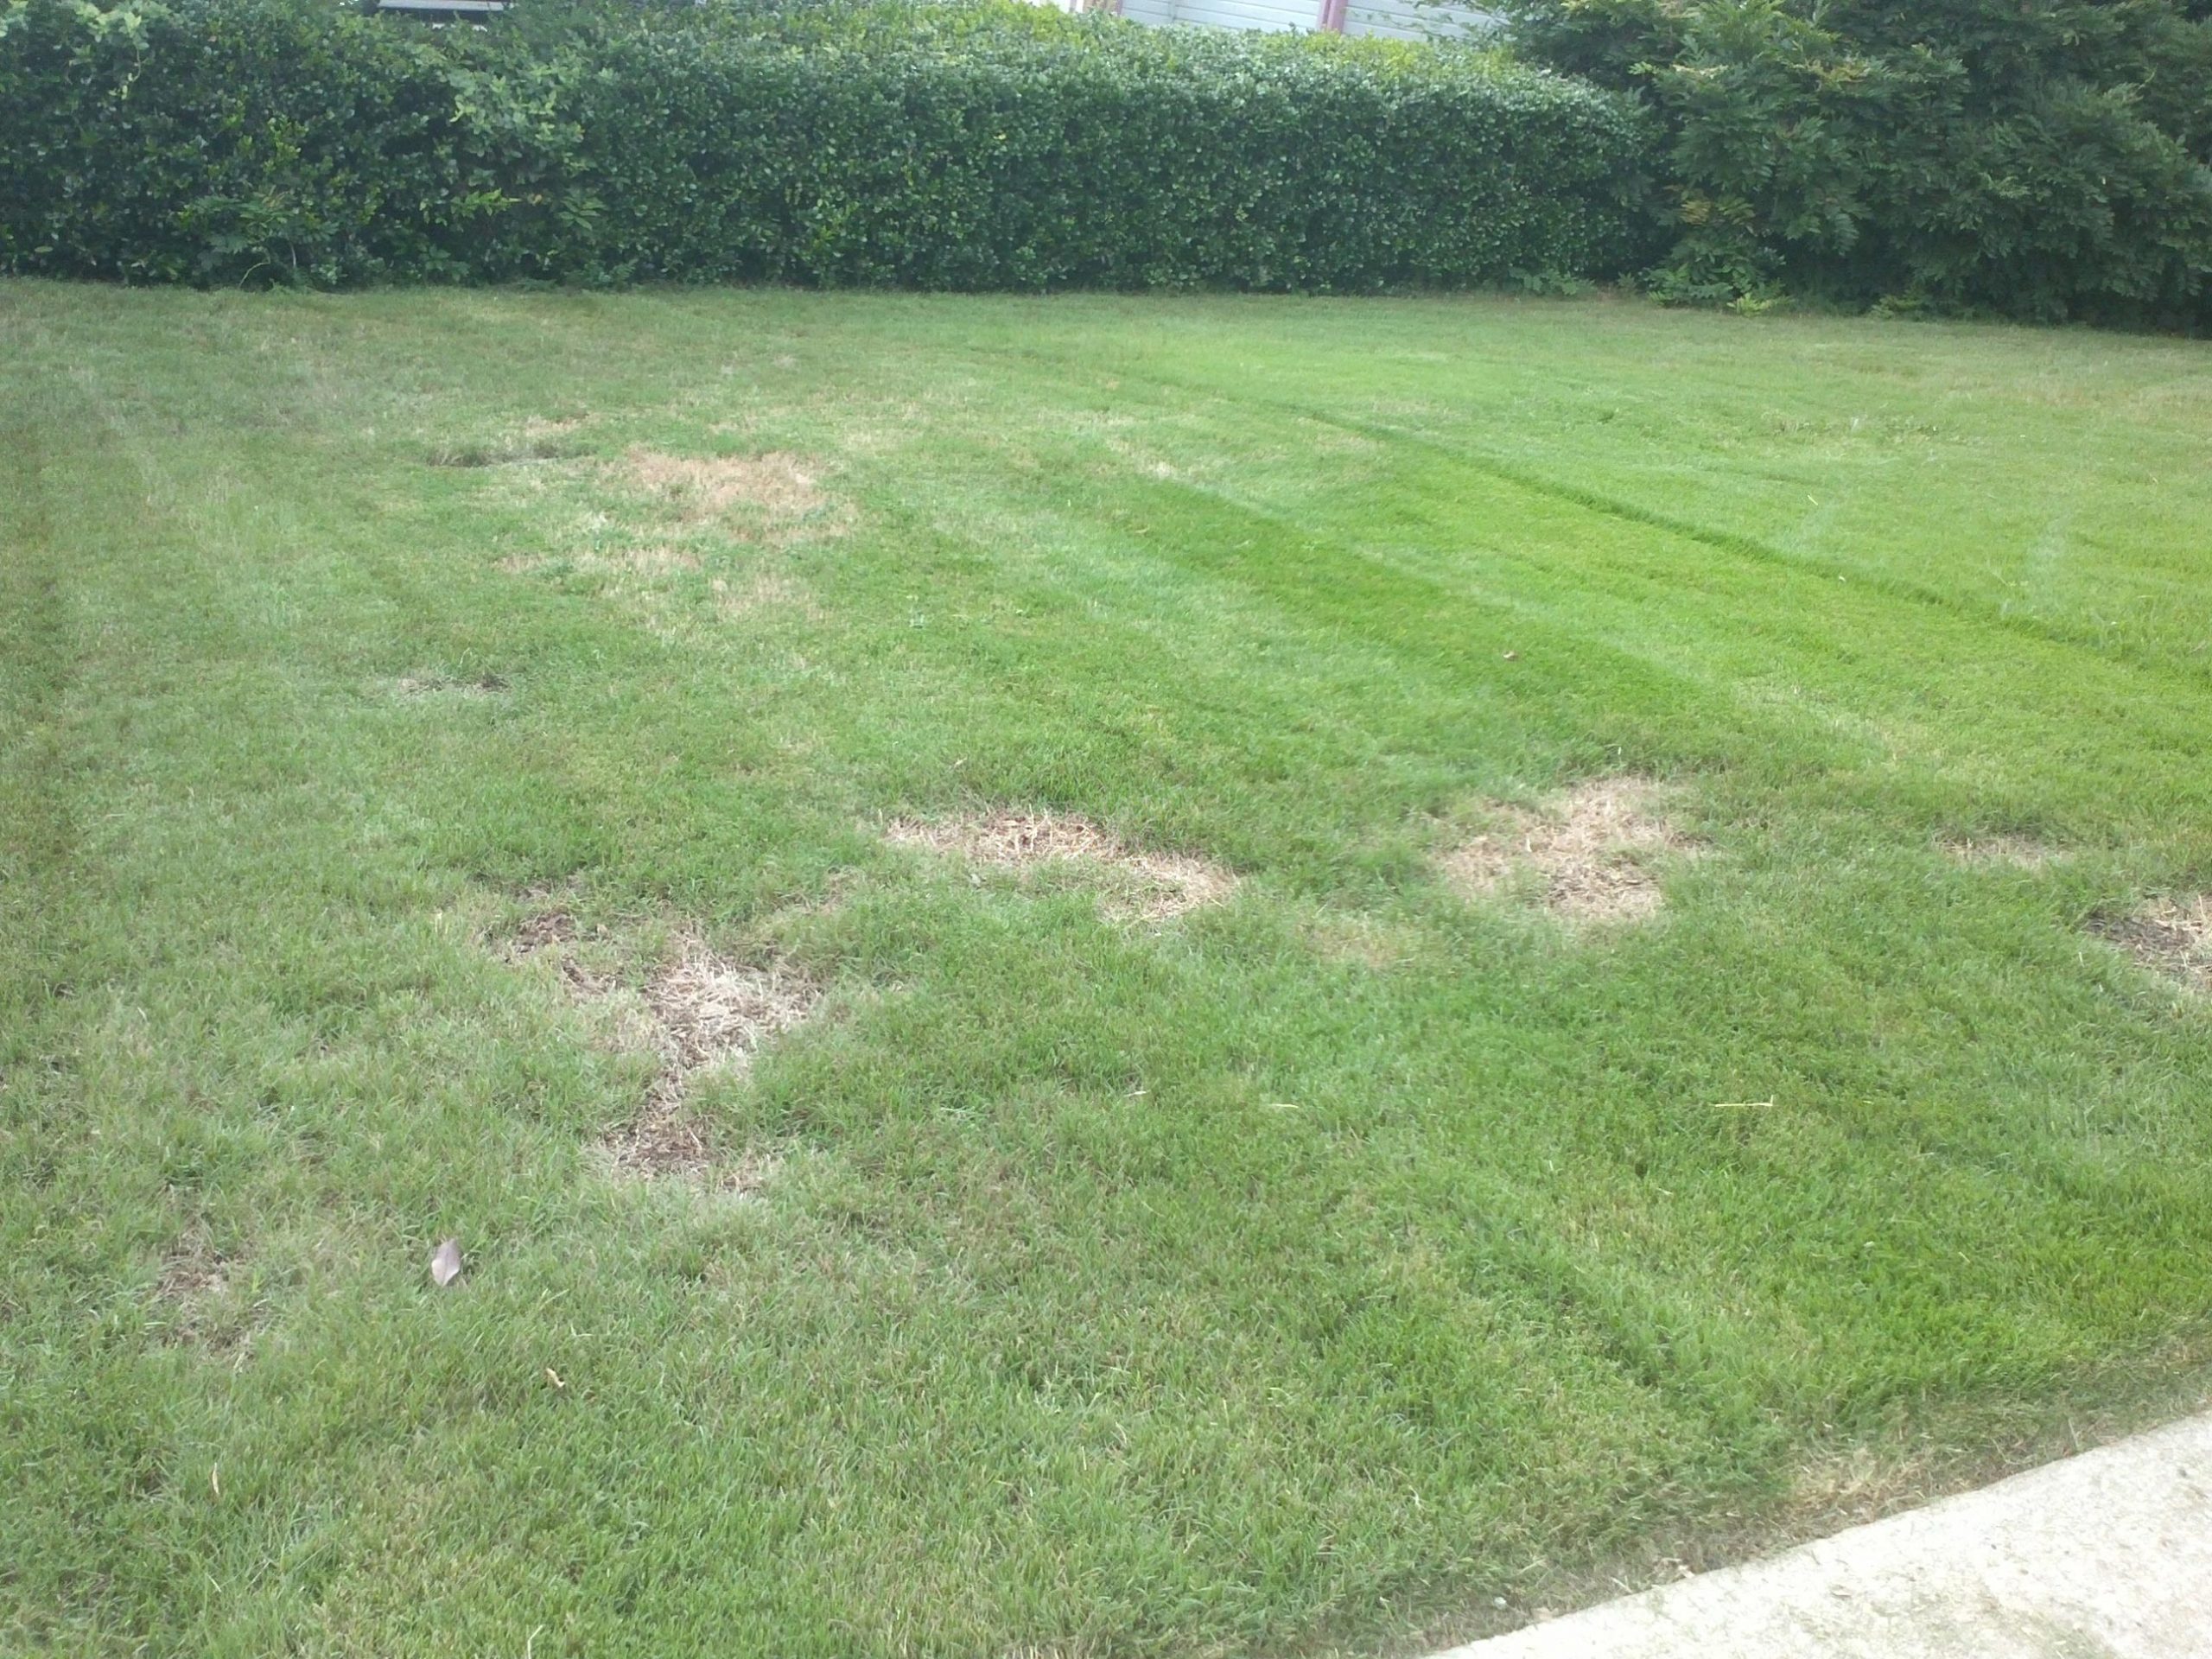 Pramitol damage to lawn